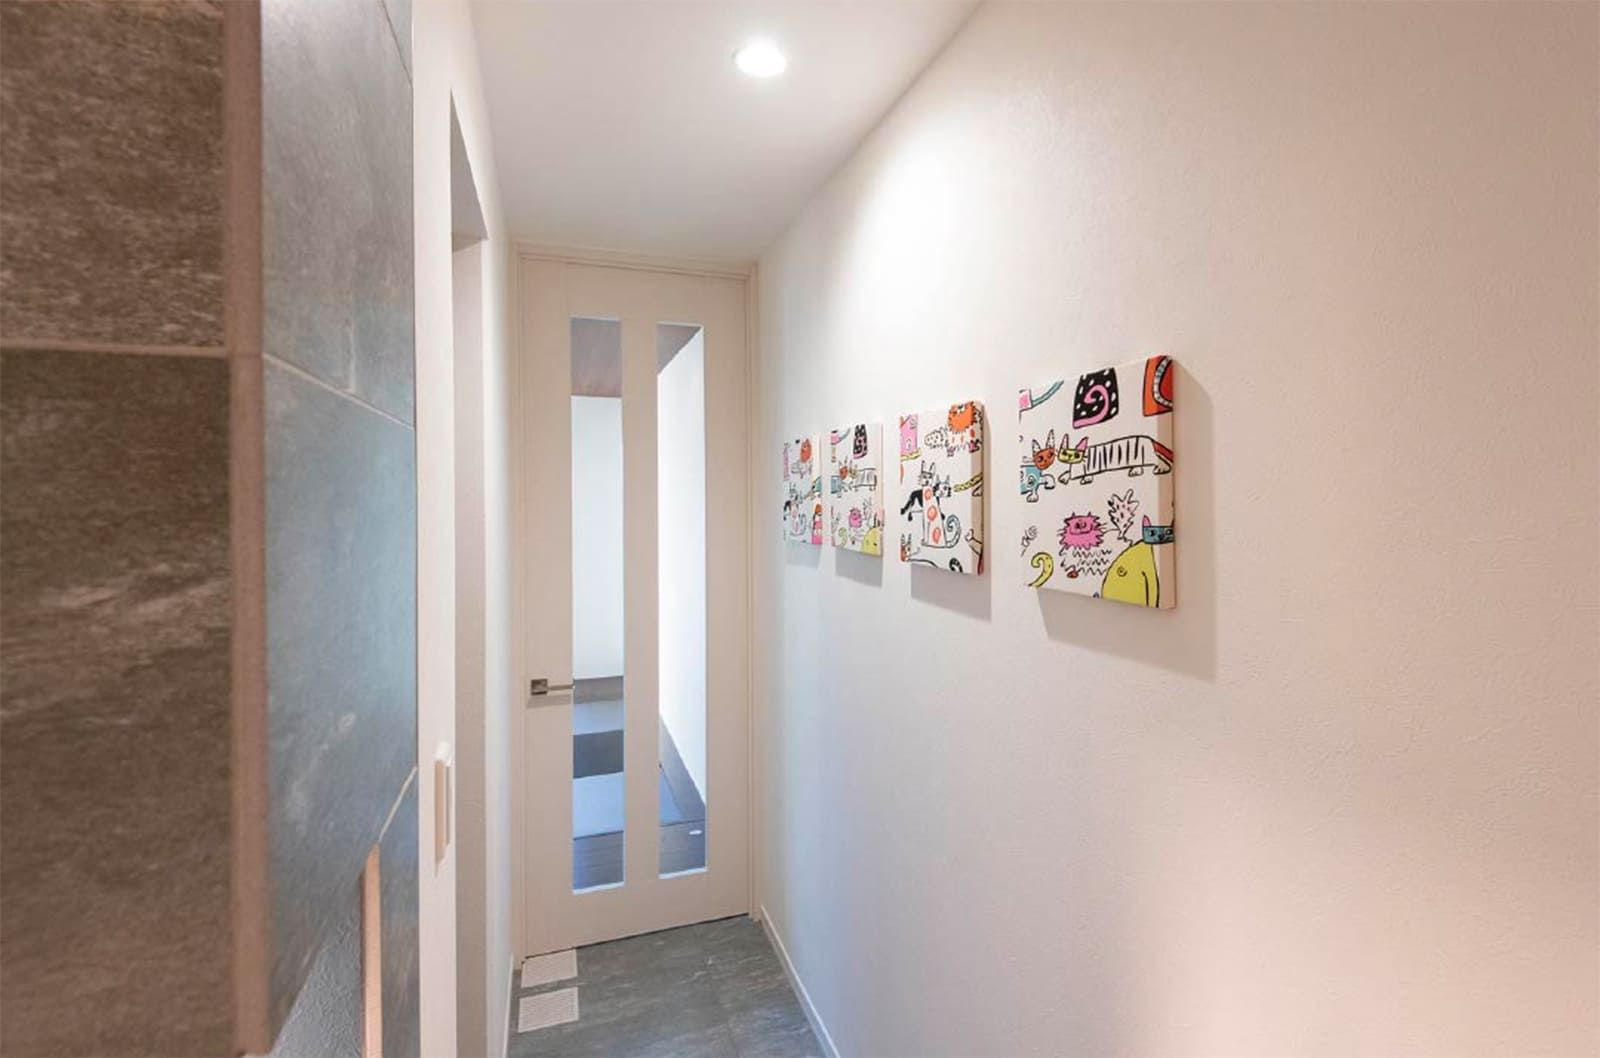 東京セキスイハイム建築実例_猫をモチーフにしたファブリックパネルが飾らた1階の廊下